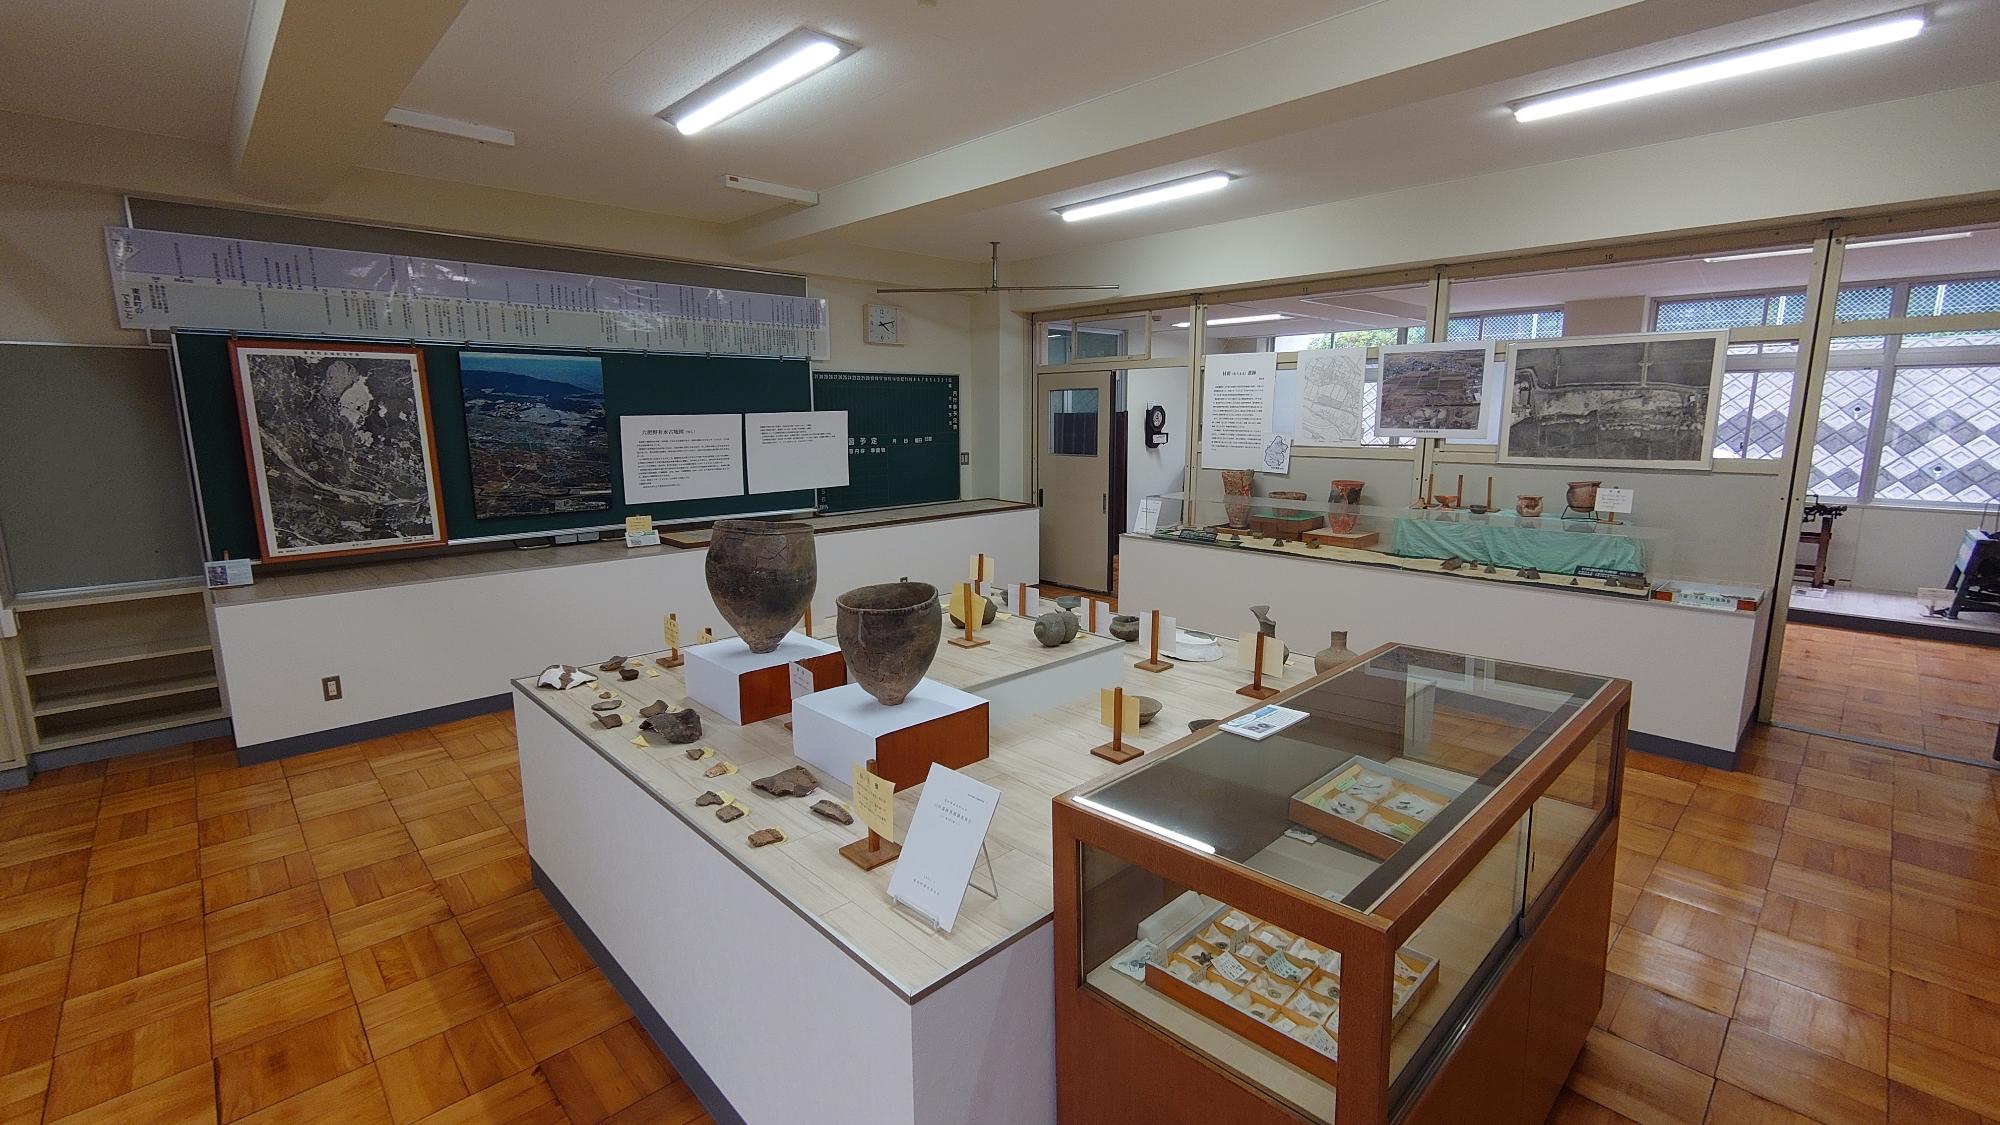 発掘出土品を展示している元教室を利用した東員町郷土資料館内部の写真1